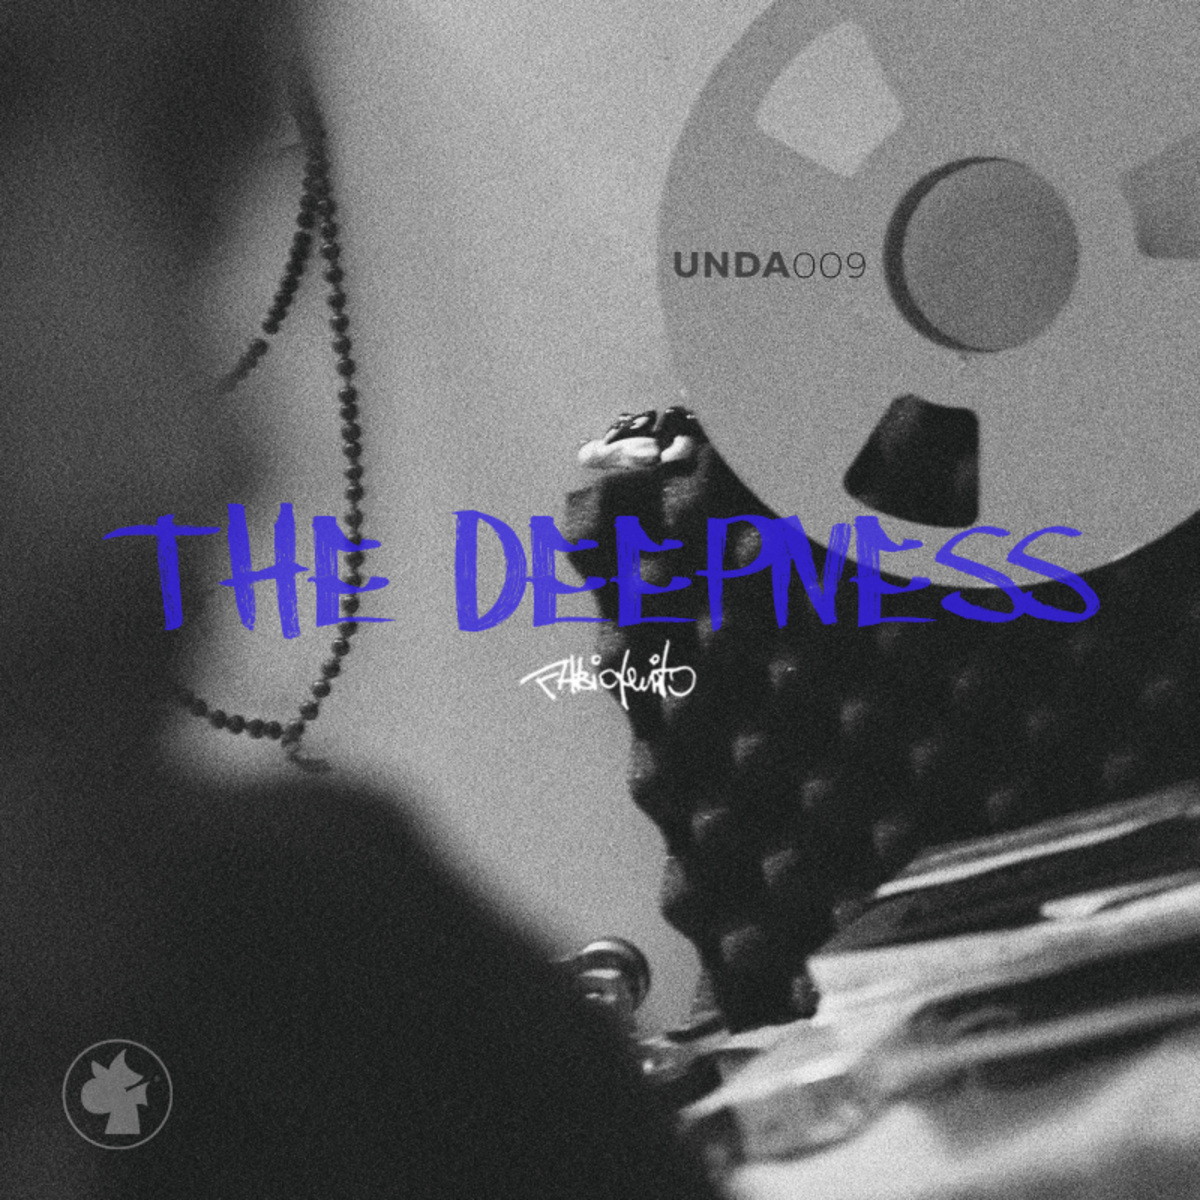 Fabio Genito - The Deepness / UNDA